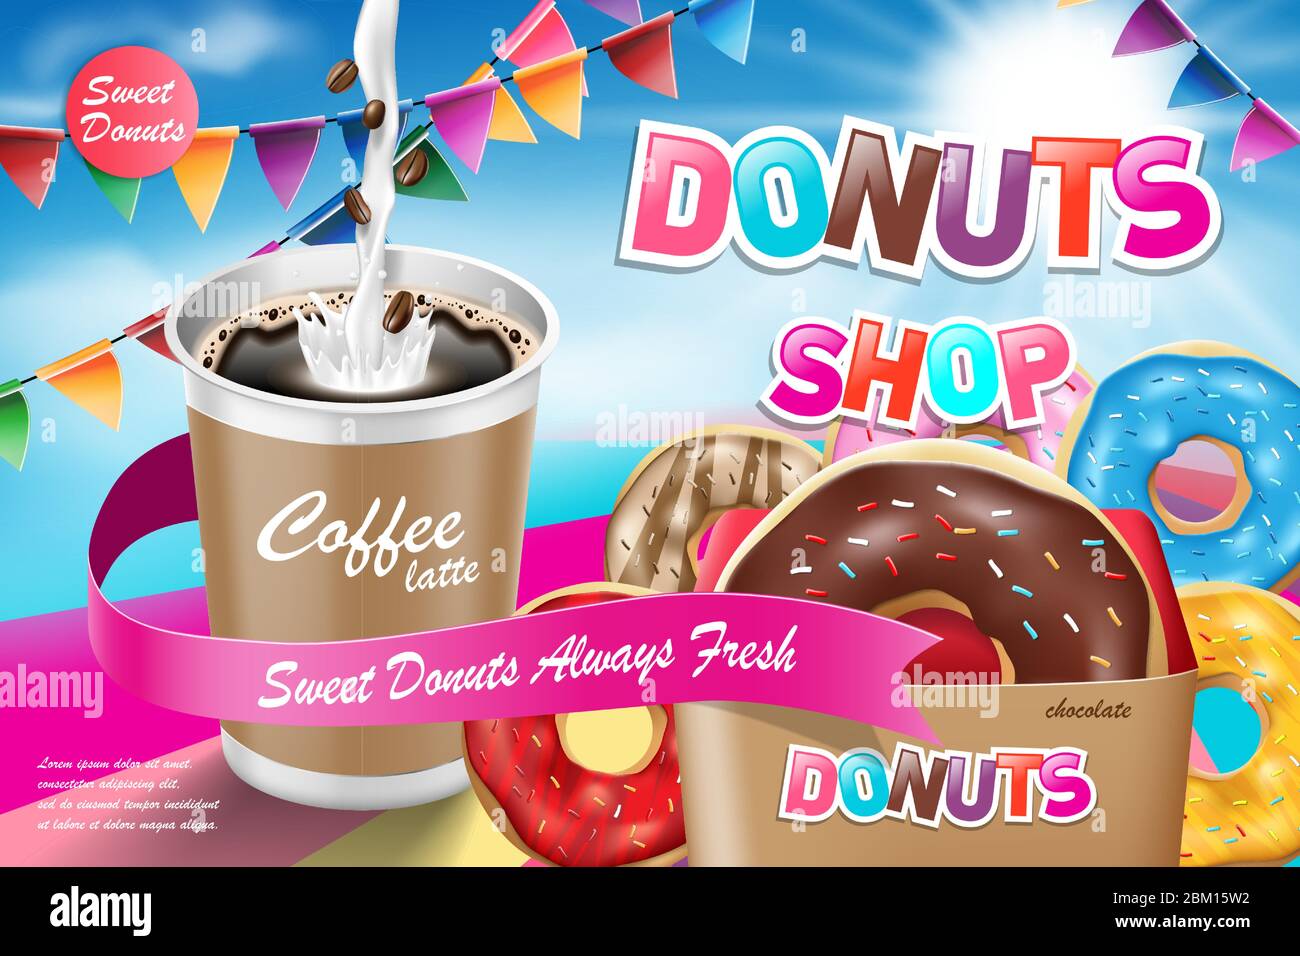 Deliciosos donuts con café latte. Publicidad para panadería o cafetería. Donuts de chocolate sobre fondo azul. Ilustración vectorial Ilustración del Vector